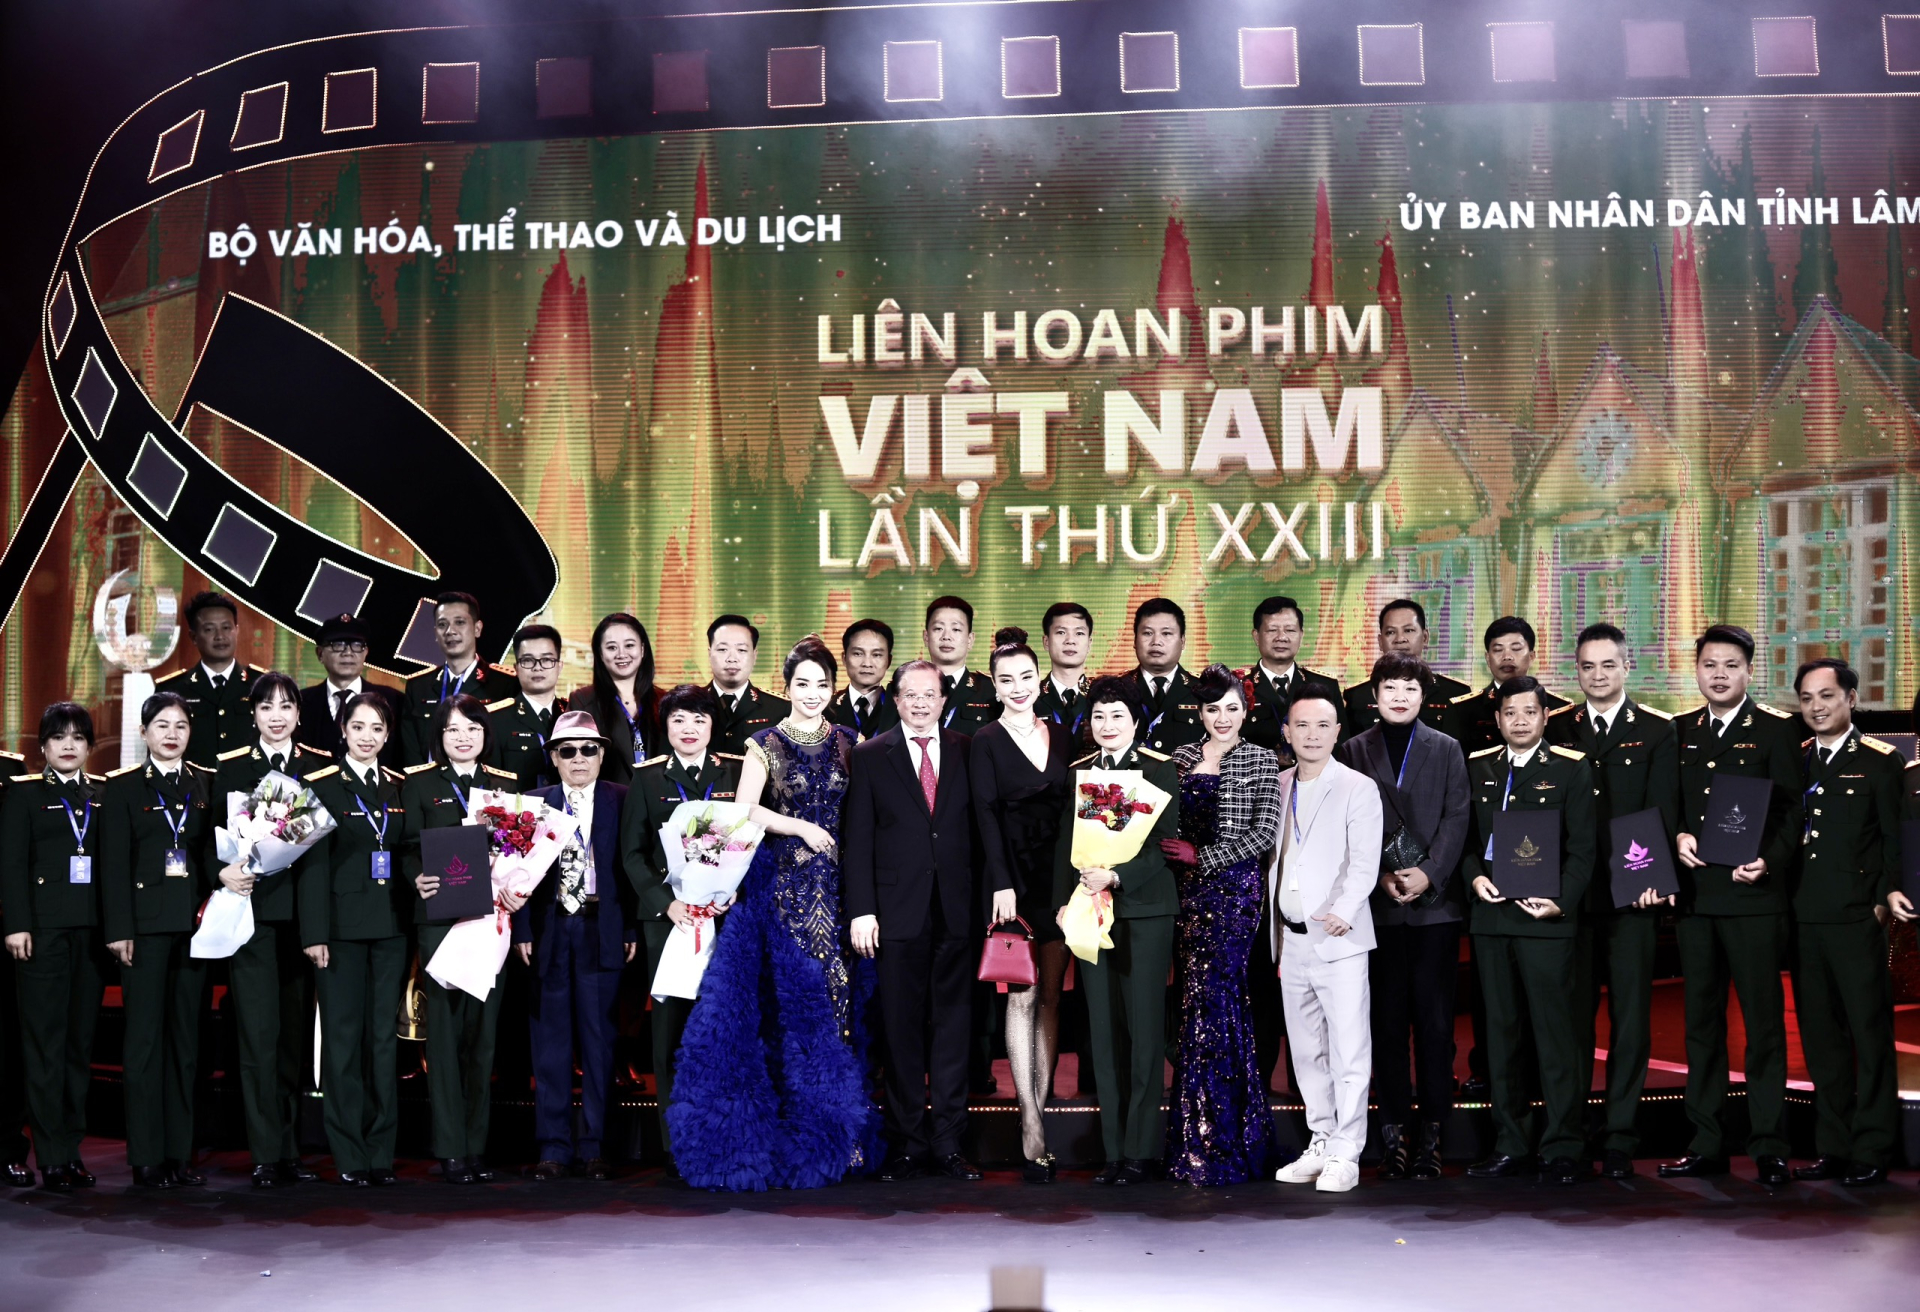 Thái Nhã Vân đọ sắc cùng dàn mỹ nhân Việt tại Liên hoan phim Việt Nam - ảnh 5